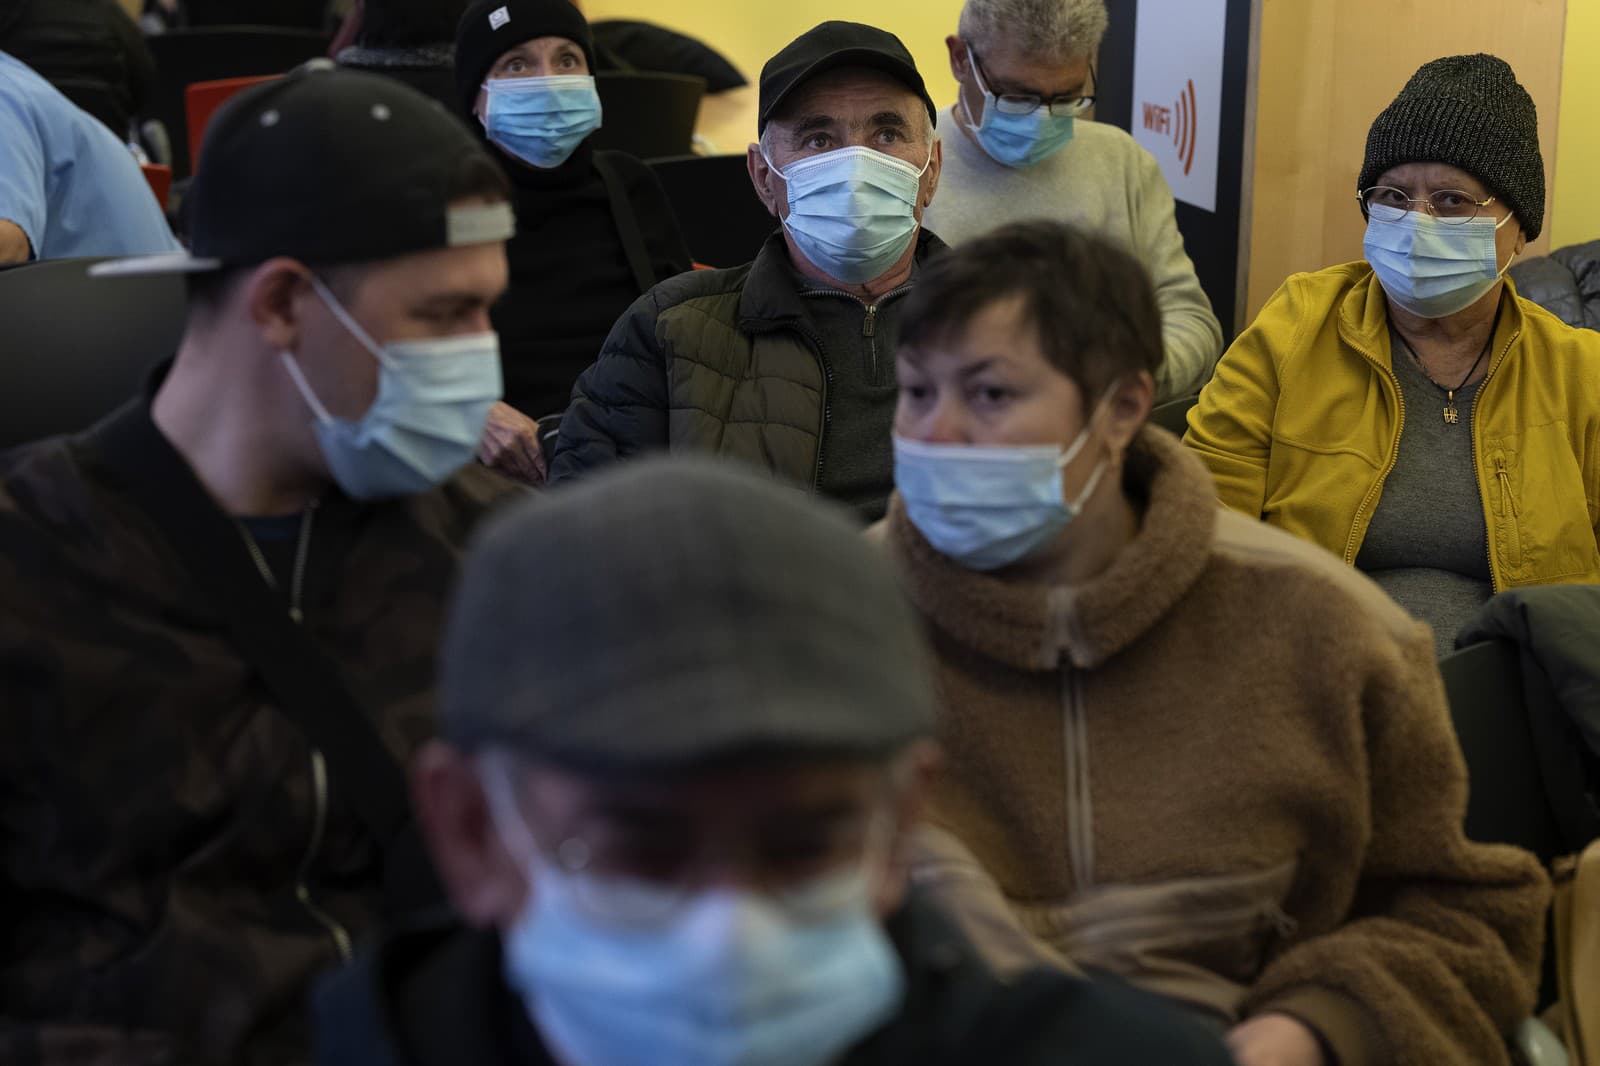 Ľudia, ktorí majú preventívne masky na tvár, chodia do nemocnice v Barcelone.